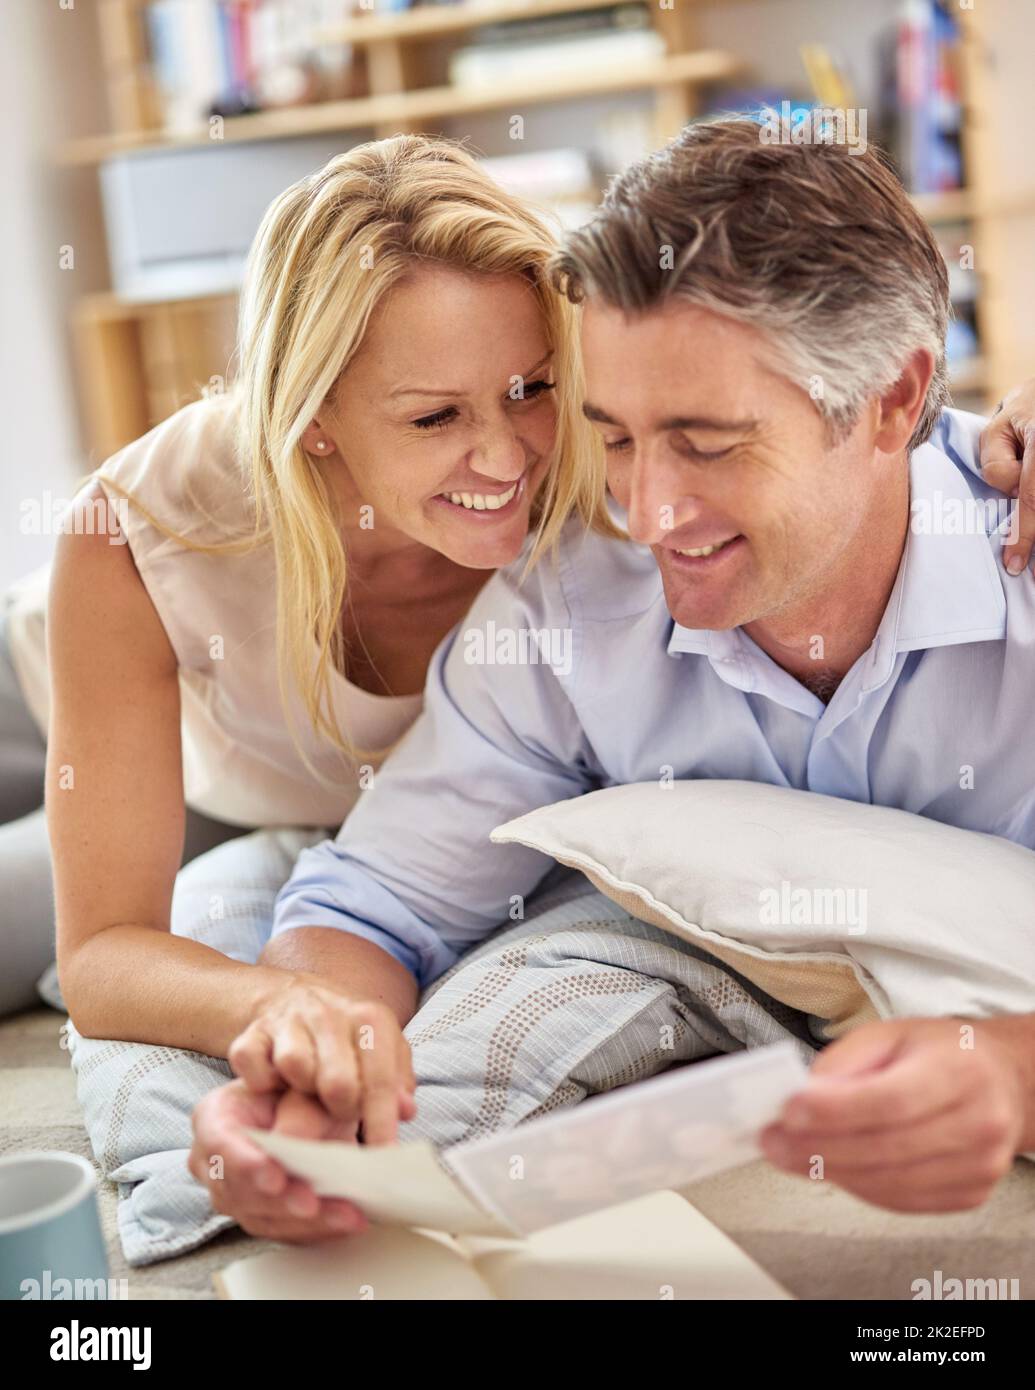 Eine Reise in die Gedächtnisspur. Aufnahme eines lächelnden, reifen Paares, das auf dem Boden des Wohnzimmers liegt und Fotos ansieht. Stockfoto